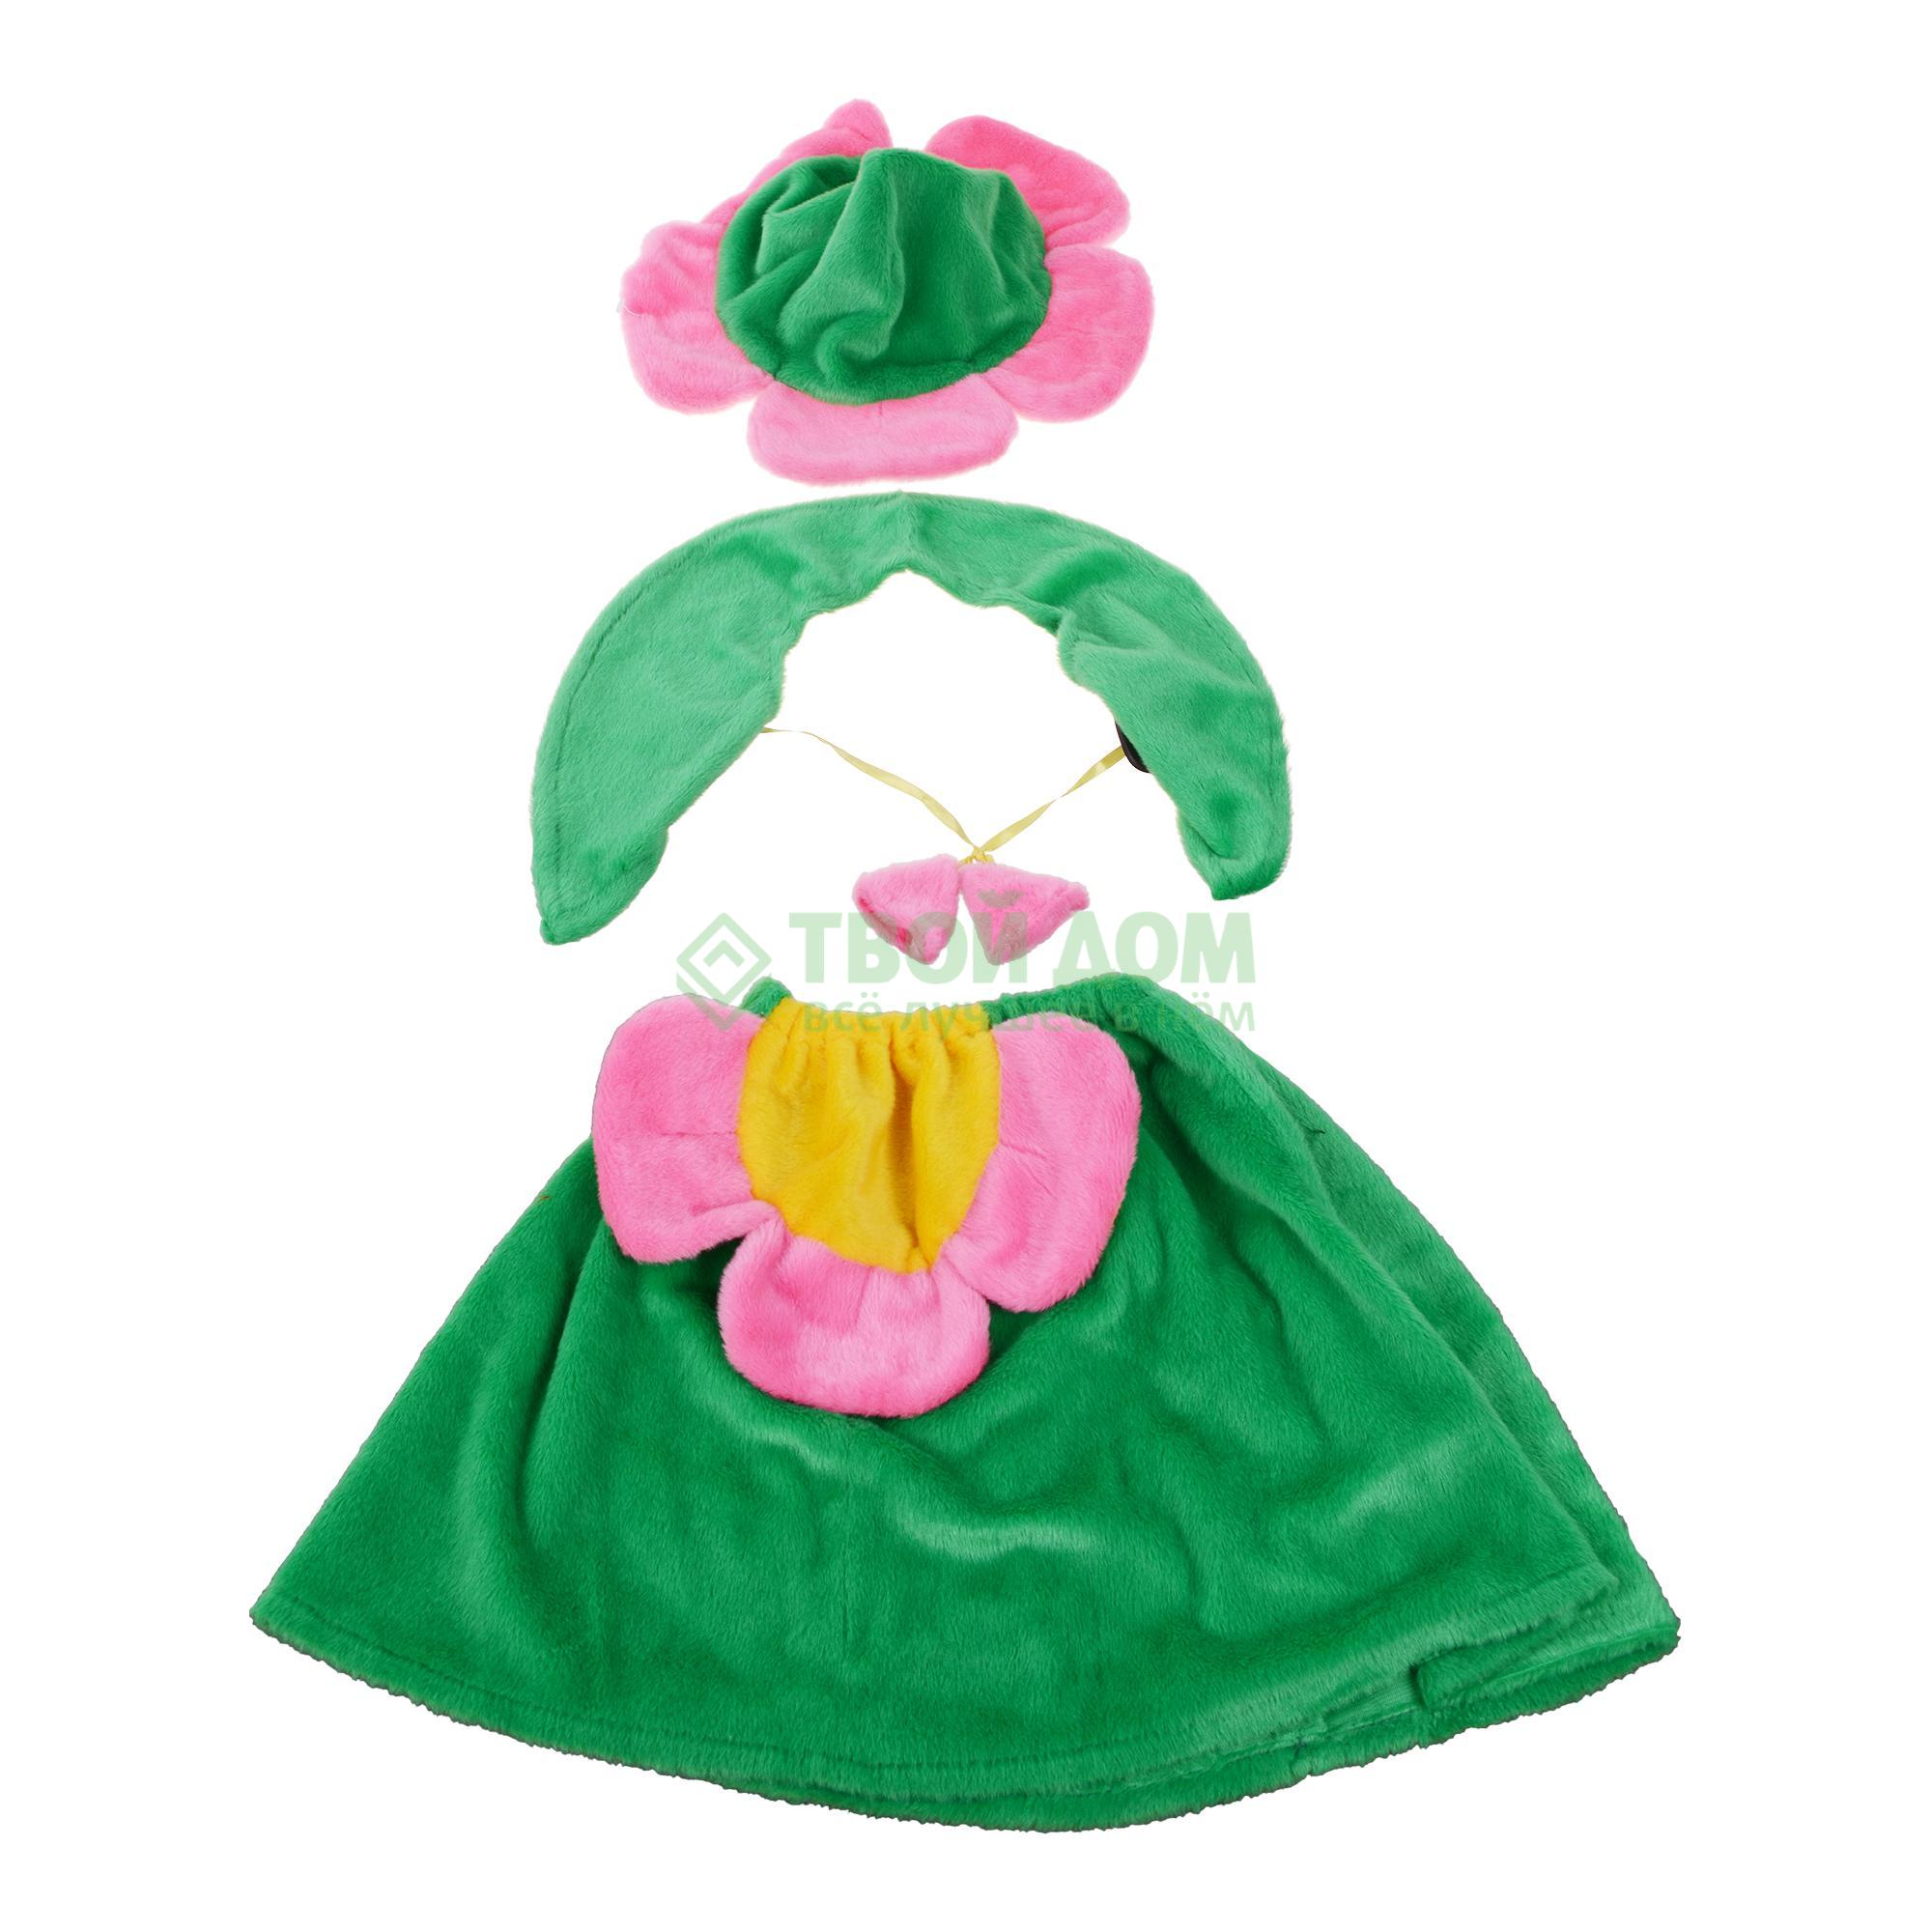 Артэ-Грим Карнавальный костюм цветочек костюм артэ грим снежинка малышка розовый 30 32